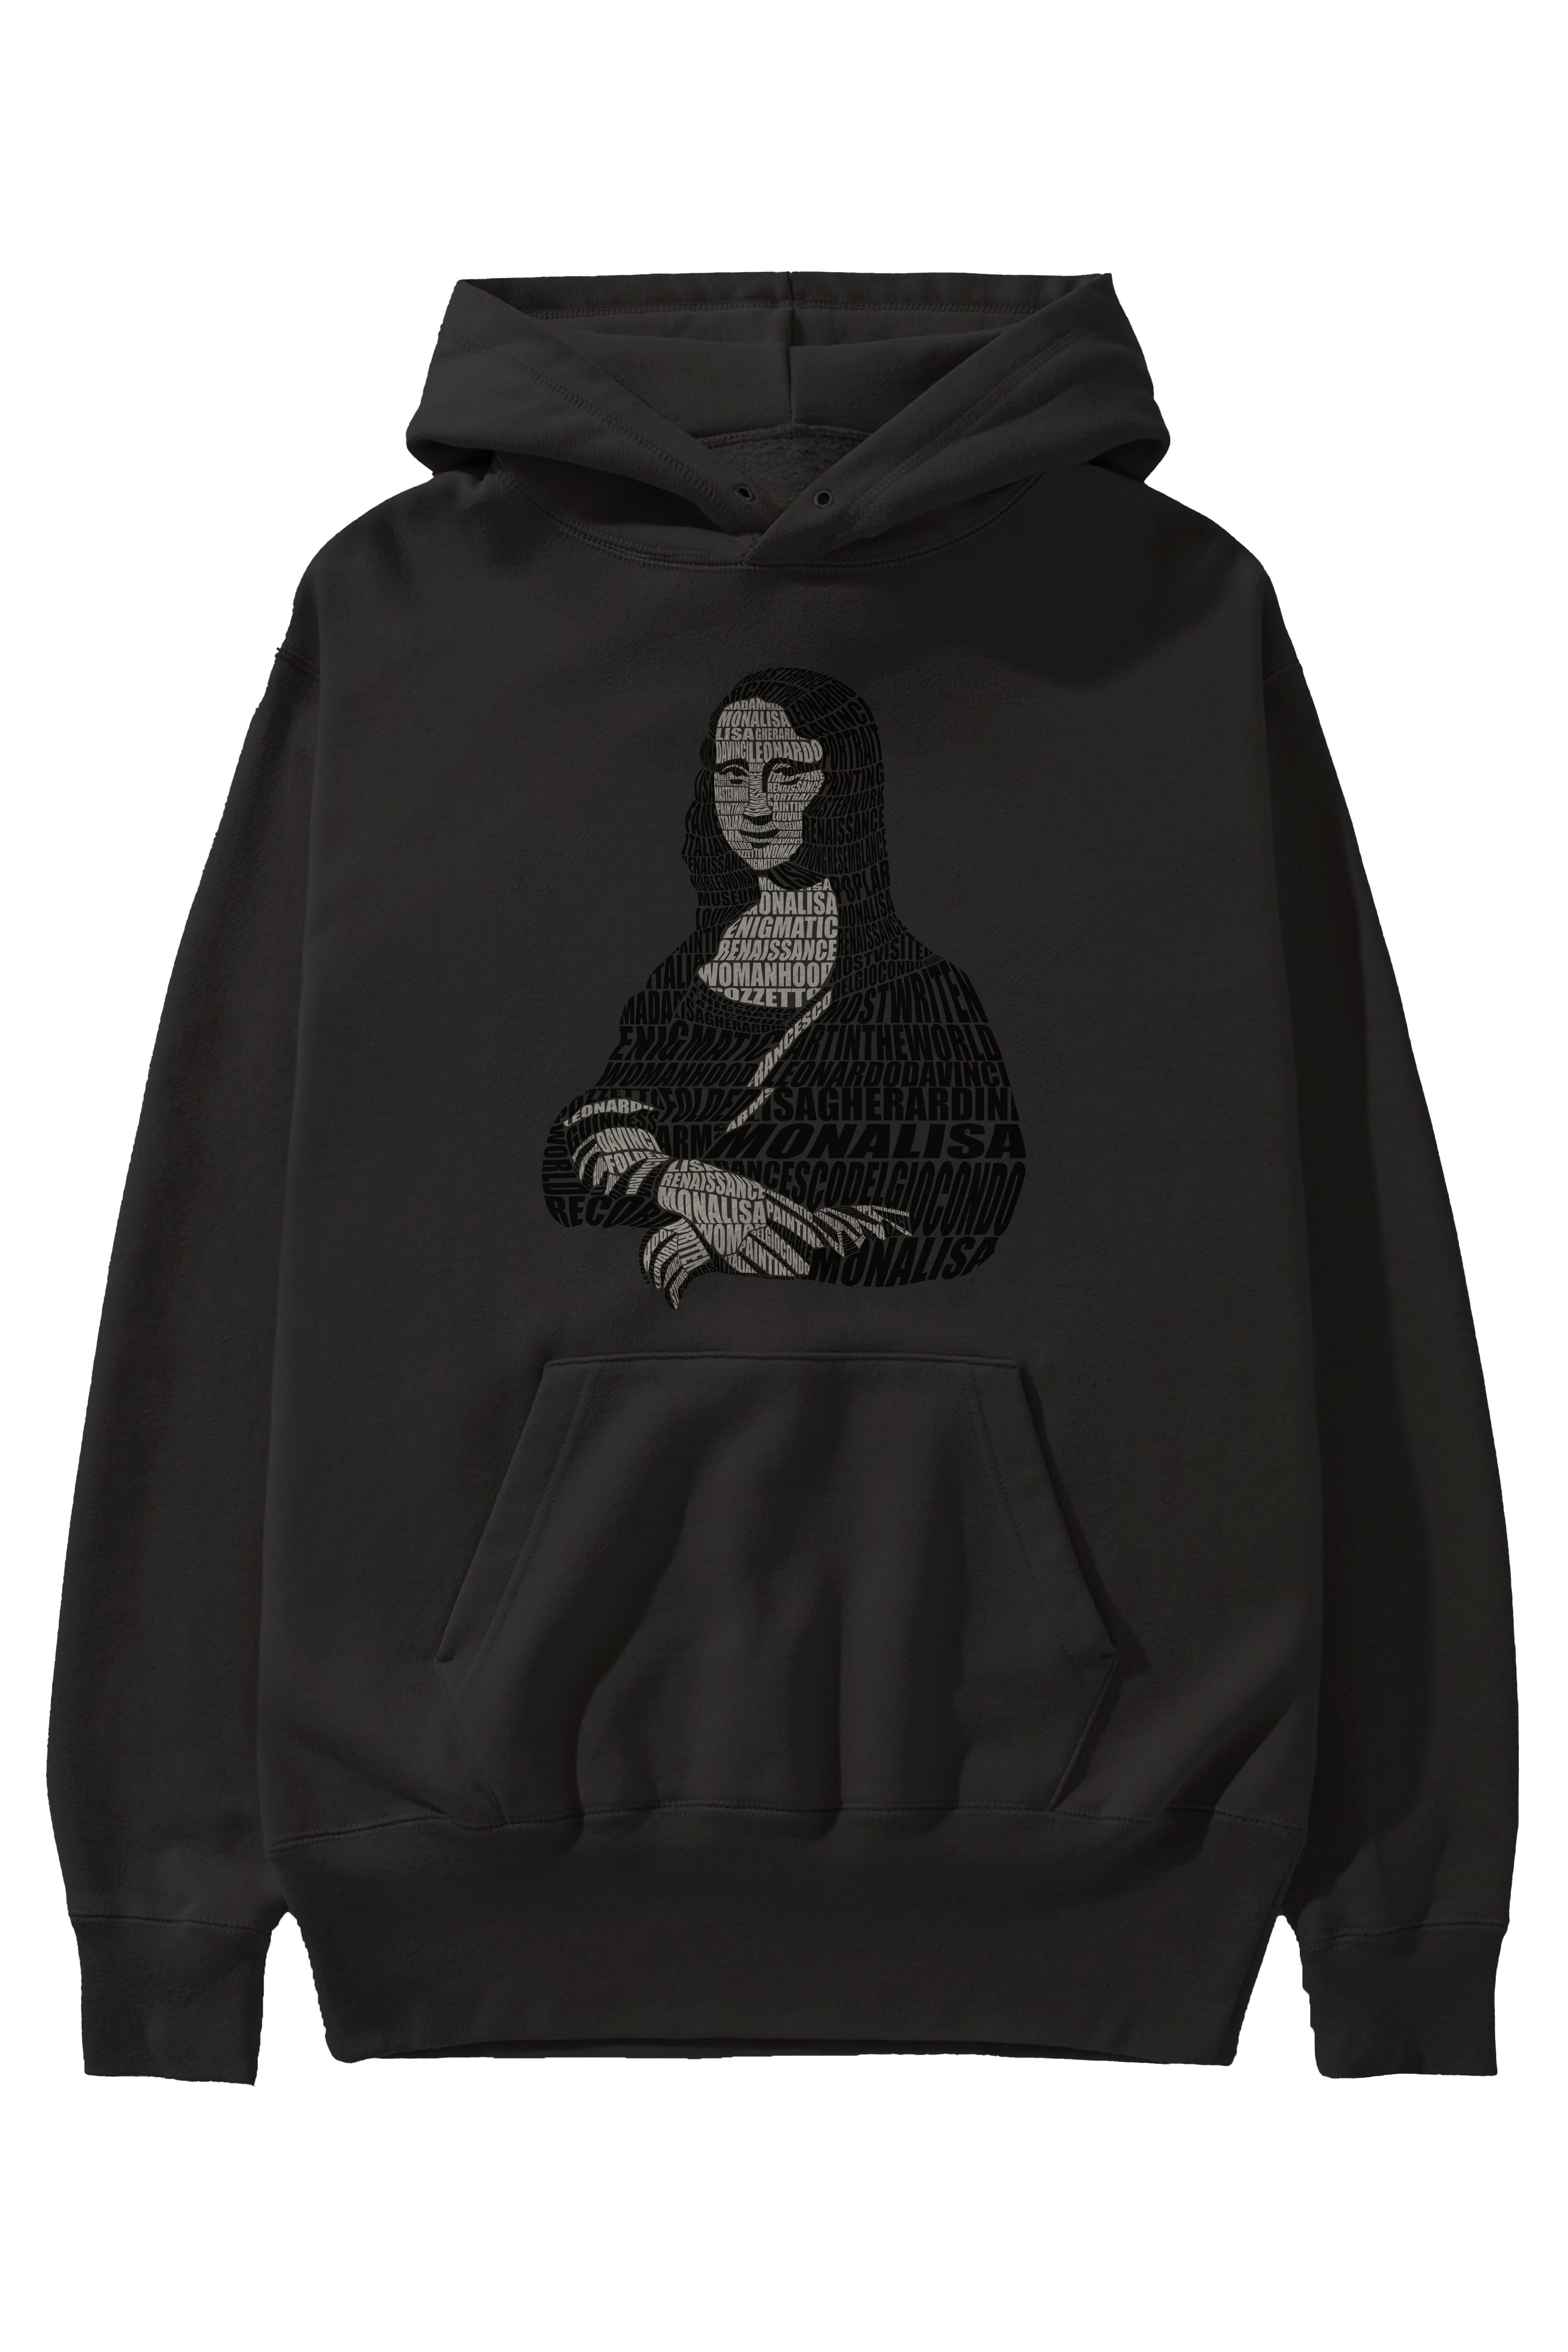 Mona Lisa Calligram Ön Baskılı Hoodie Oversize Kapüşonlu Sweatshirt Erkek Kadın Unisex